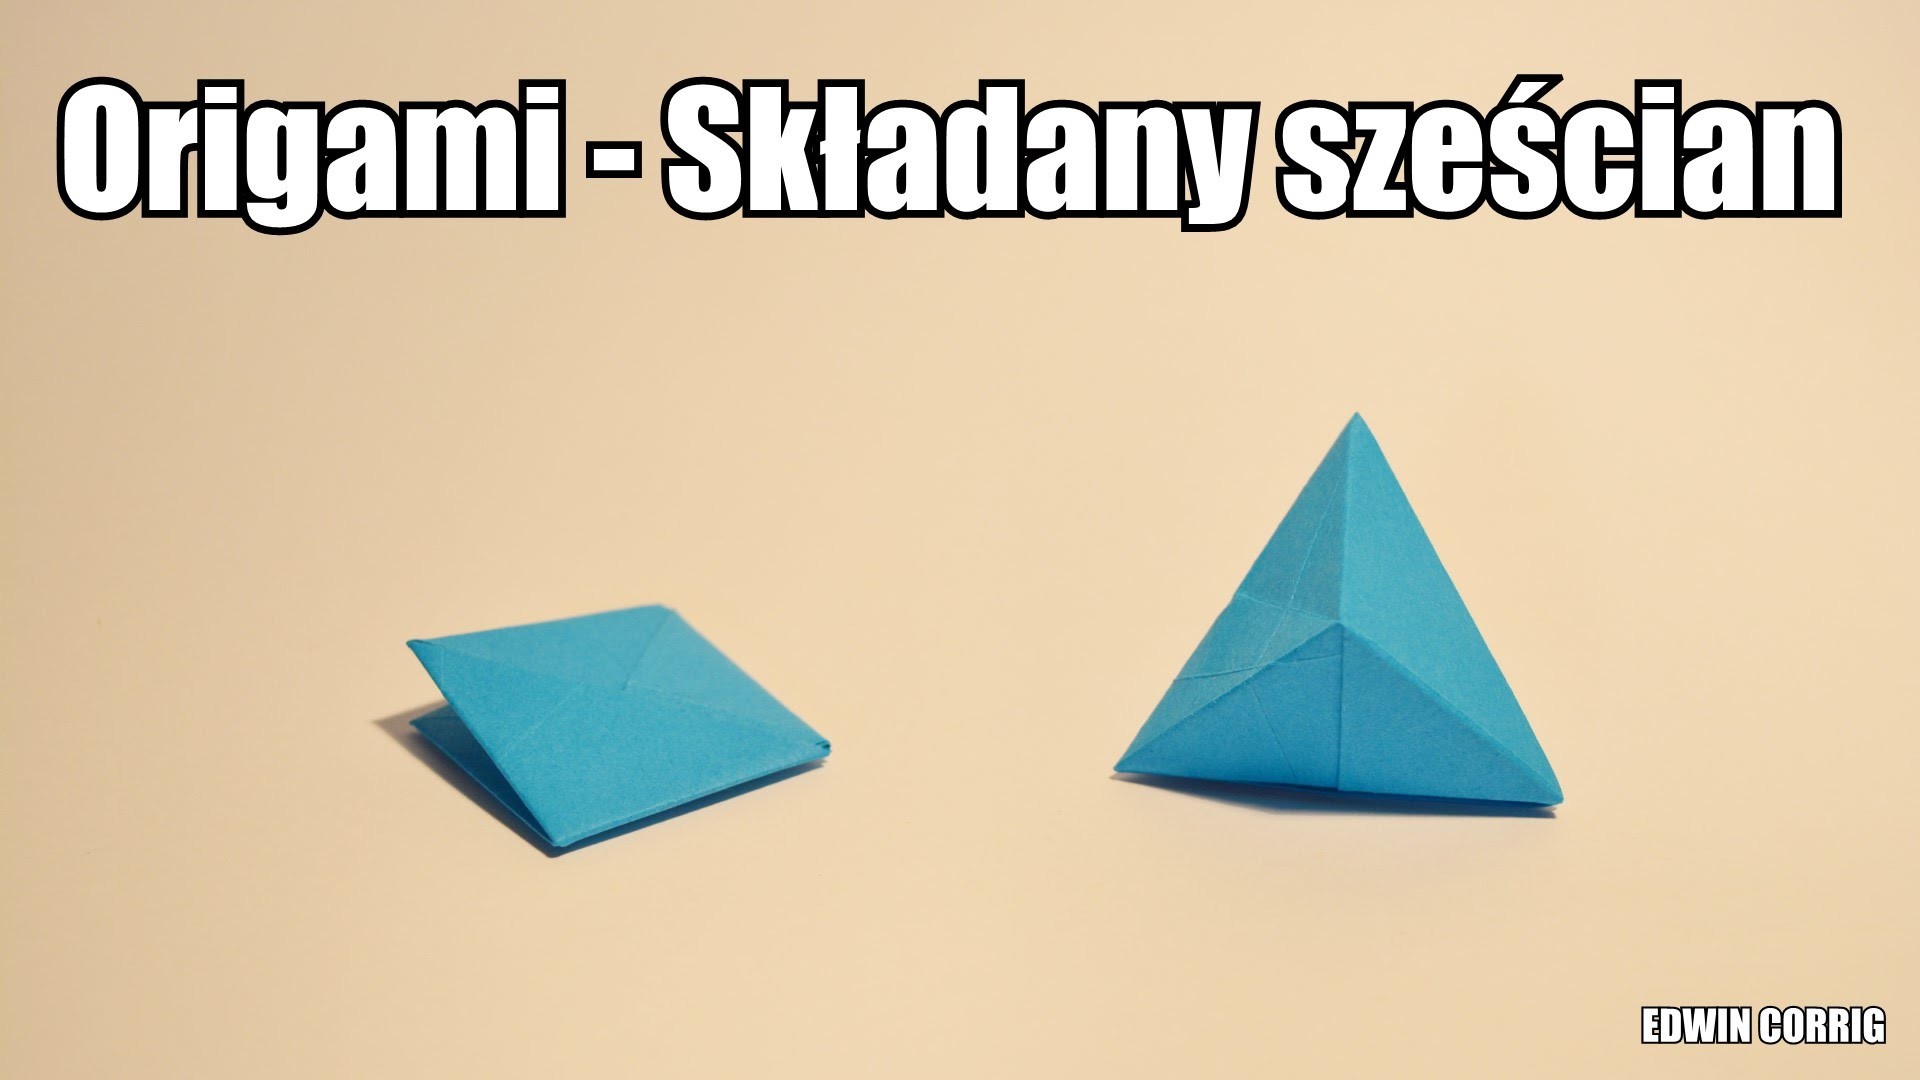 Origami - Składany sześcian